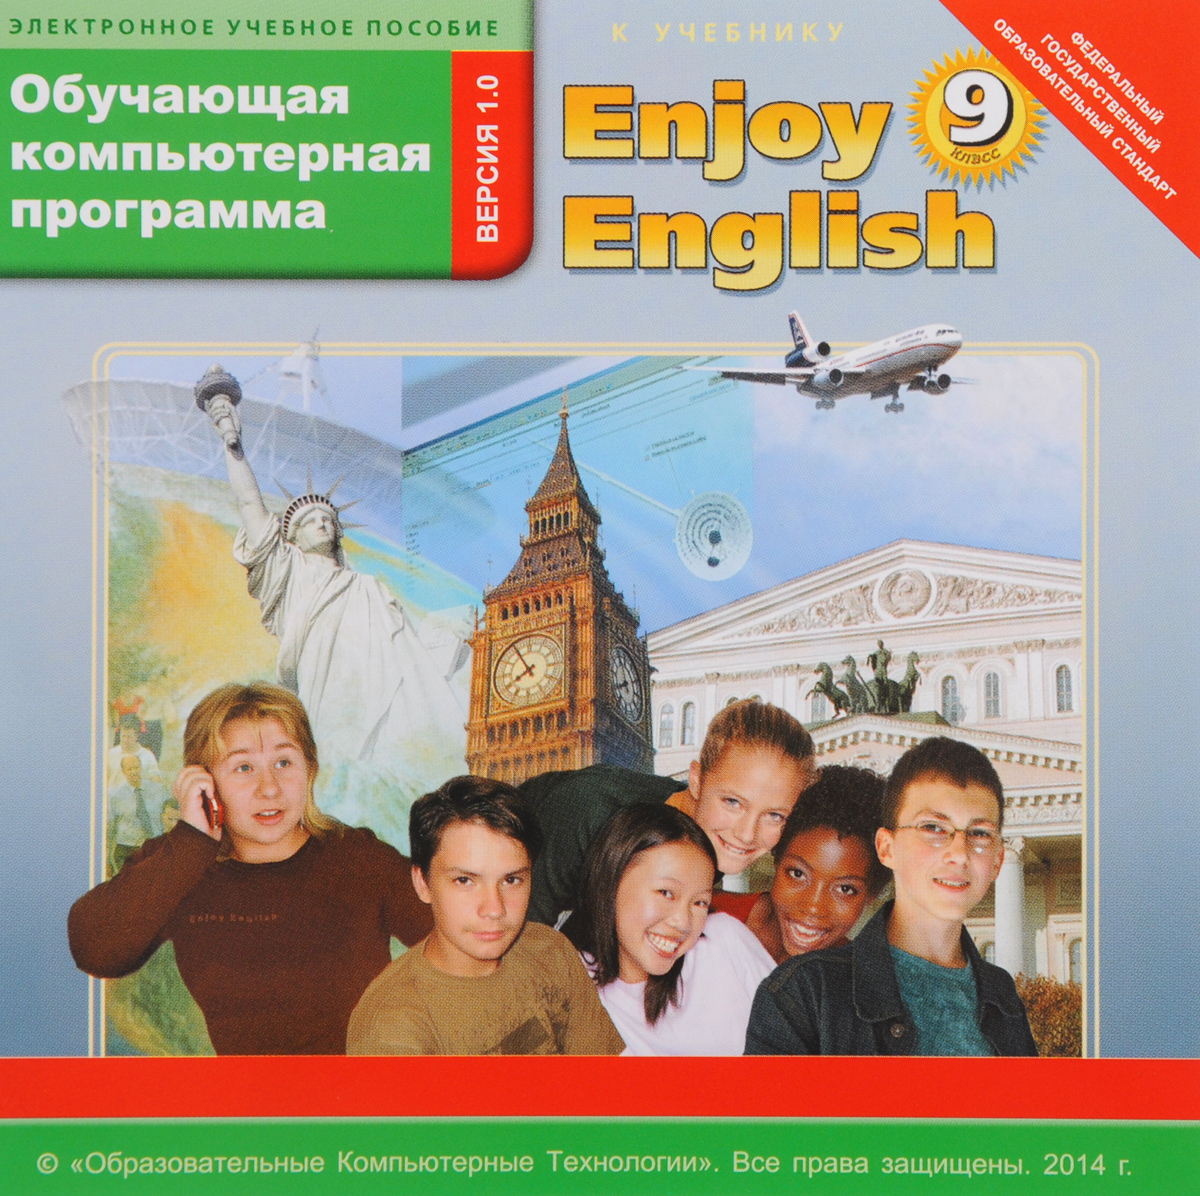 Купить английский 9 класс. Английский язык enjoy English. Учебник английского языка enjoy English. Обучающие программы английский язык. Enjoy English 9 класс.